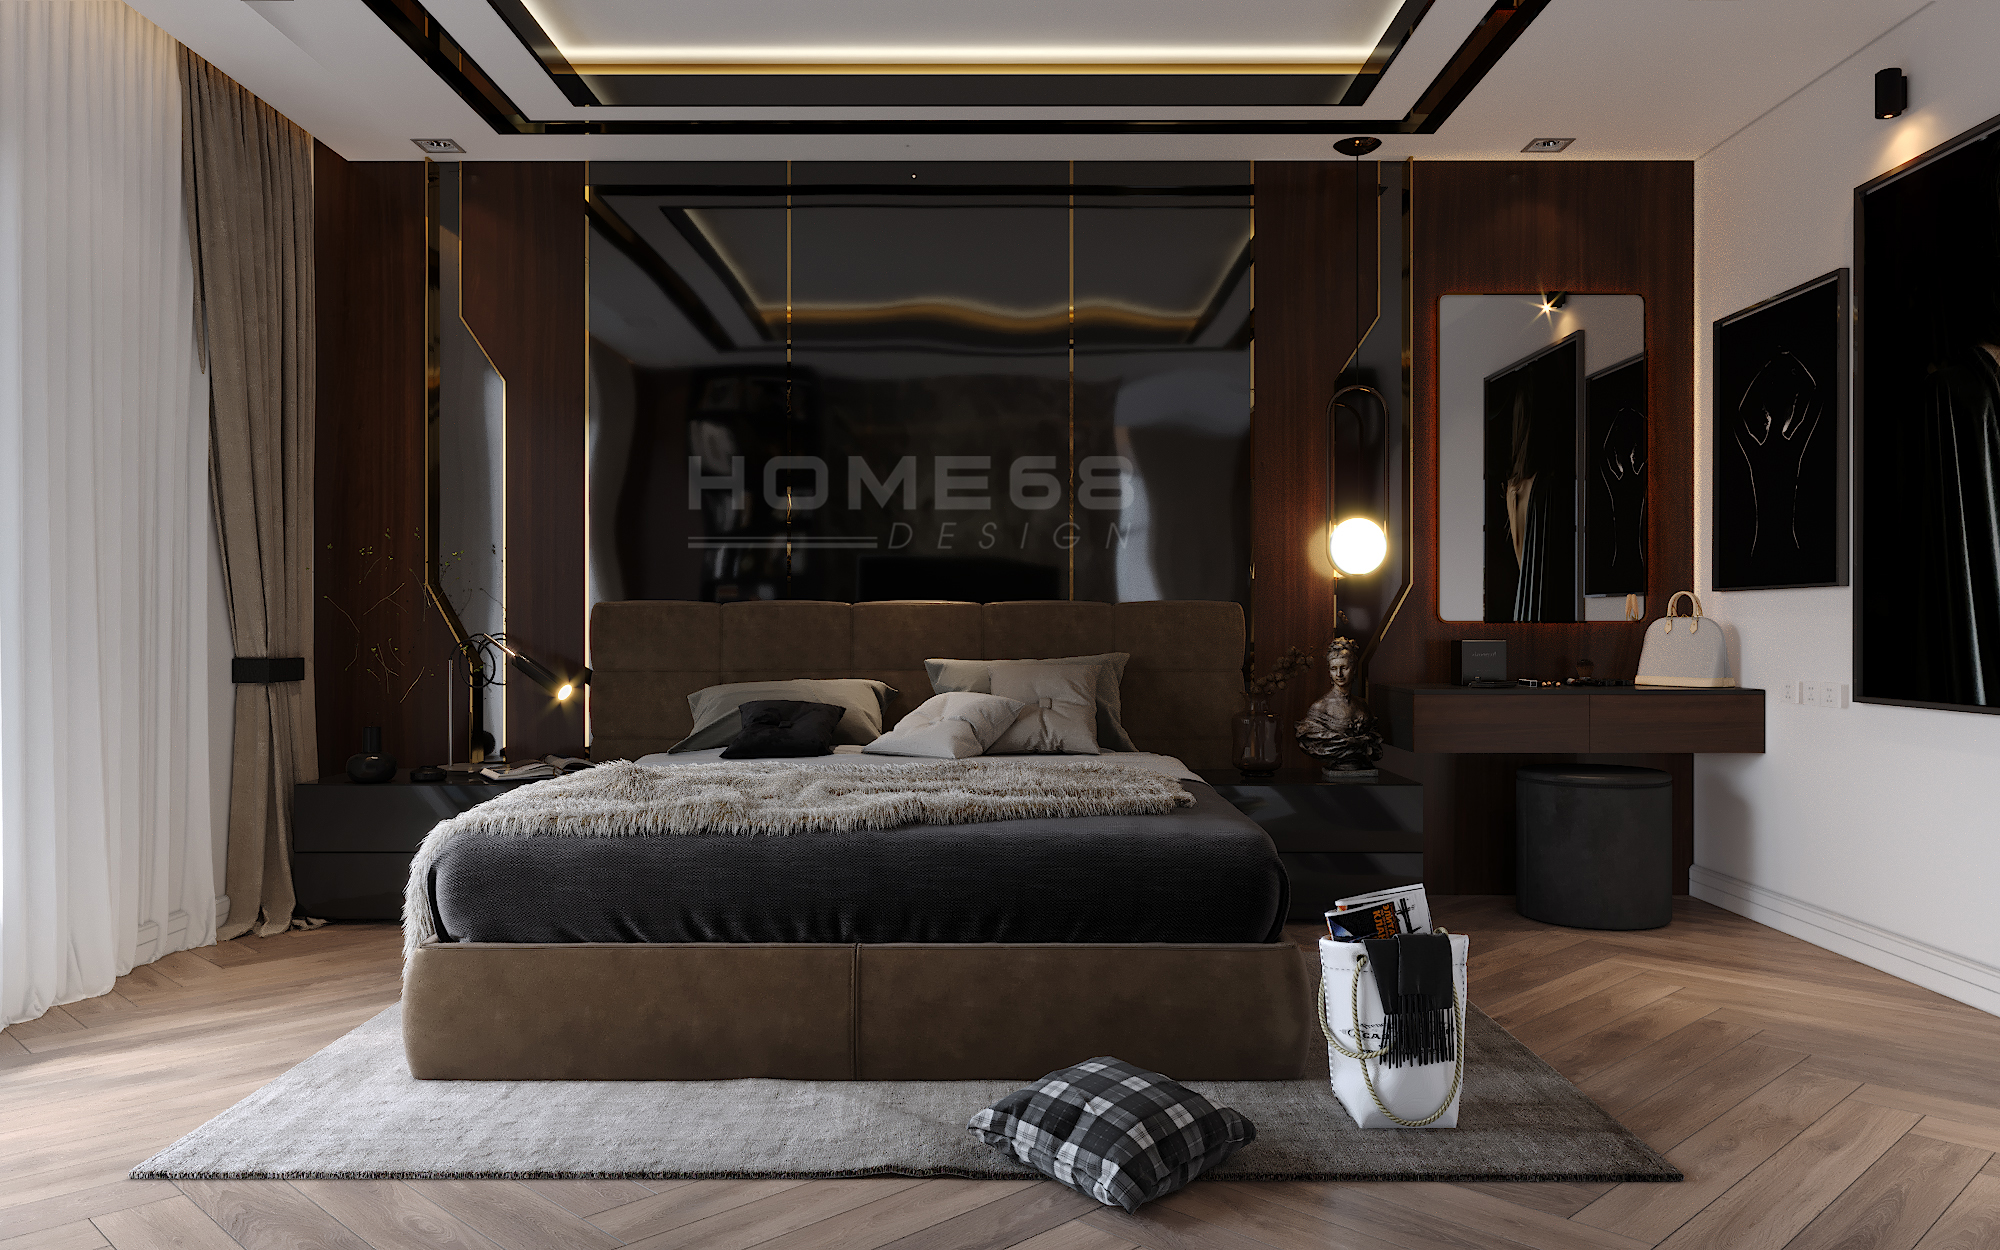 Thiết kế nội thất phòng ngủ Master tiện nghi Hải Phòng sẽ đem đến cho bạn những trải nghiệm tuyệt vời nhất. Bạn sẽ được tư vấn về các giải pháp thông minh từ việc tận dụng không gian, chọn đồ nội thất phù hợp với nhu cầu và sở thích của mình, tạo ra một phòng ngủ hoàn hảo.